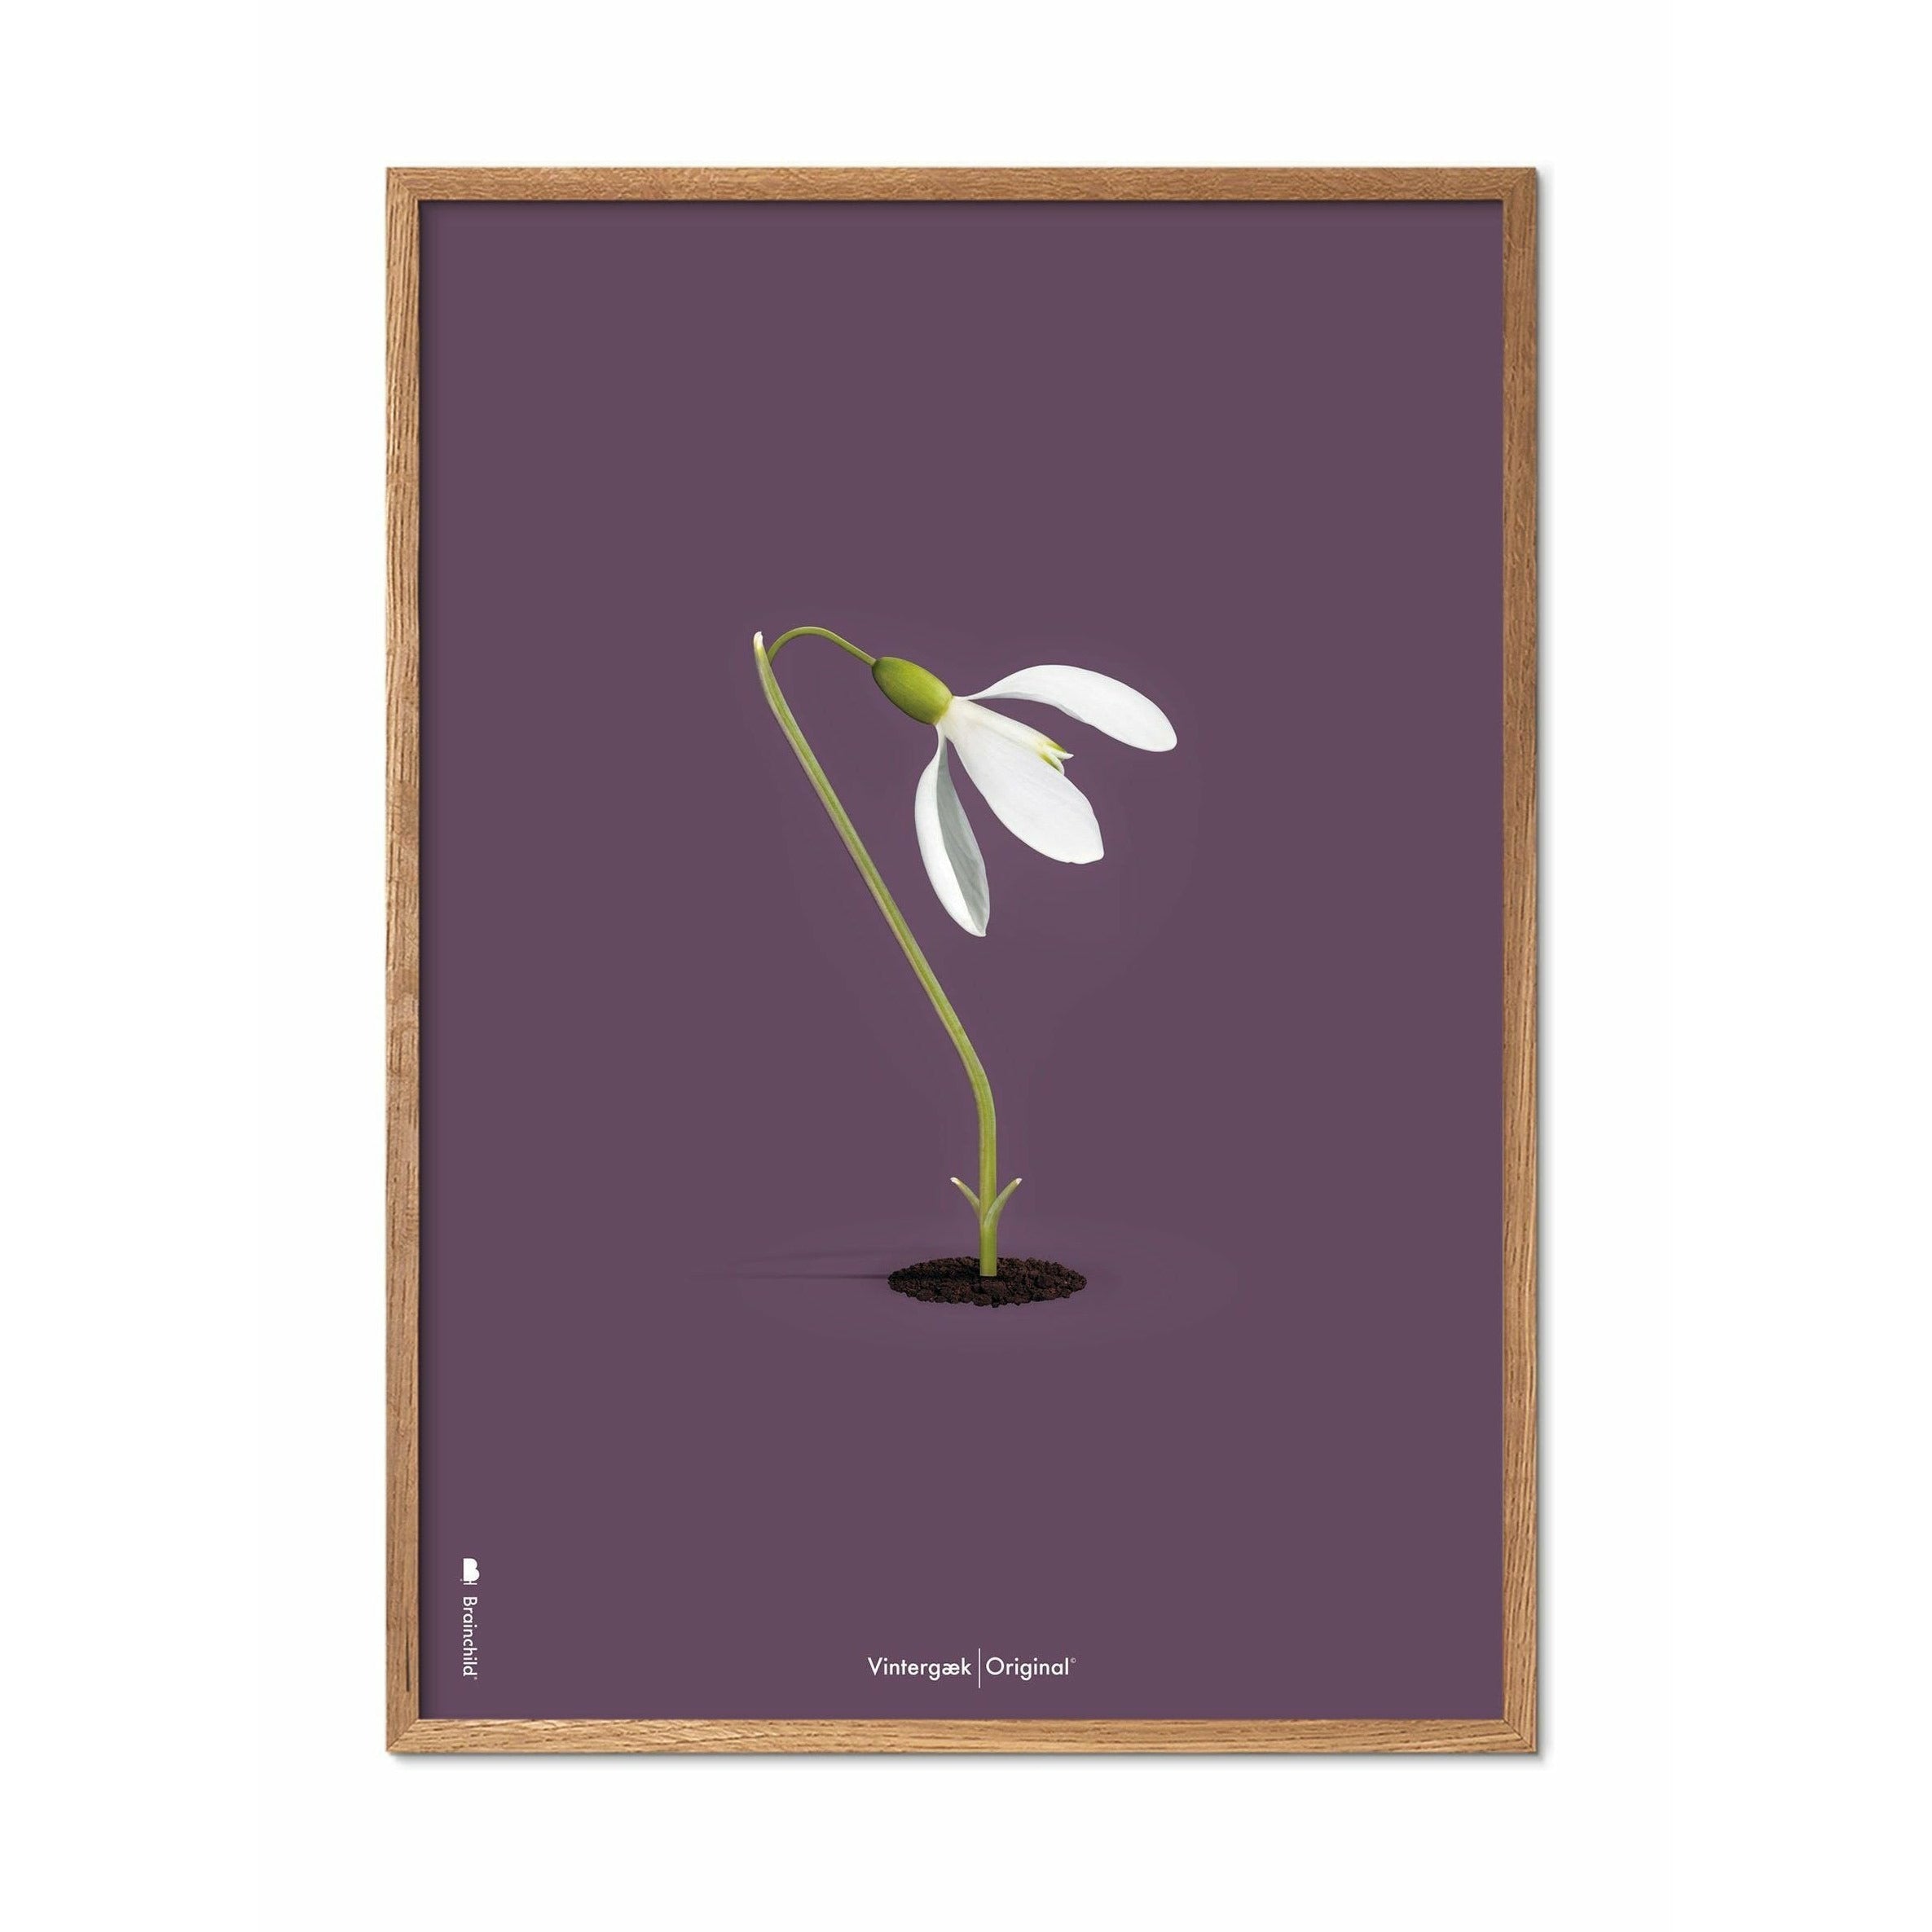 Poster classico di SnowDrop Brainchild, cornice in legno chiaro 30x40 cm, sfondo viola